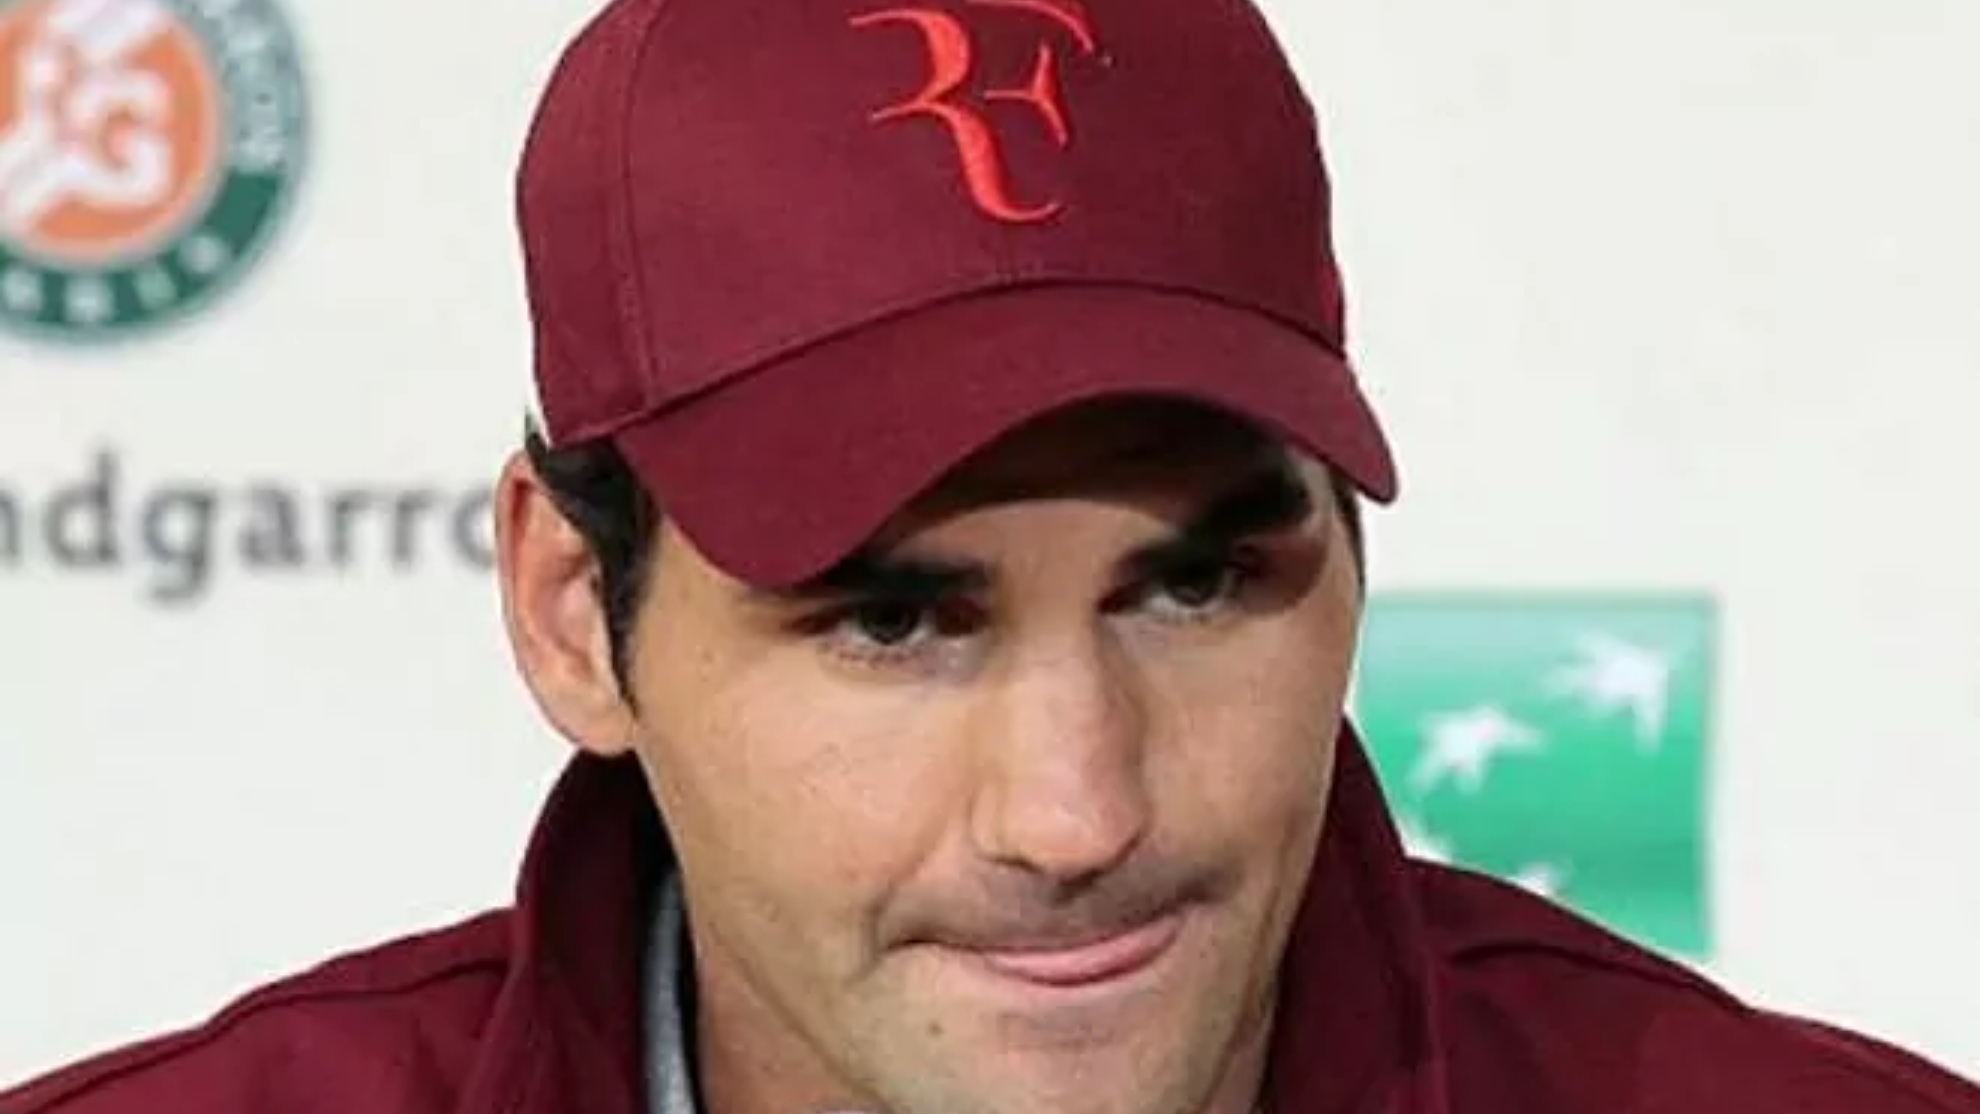 El logo de Roger Federer es uno de los más reconocidos en el mundo...